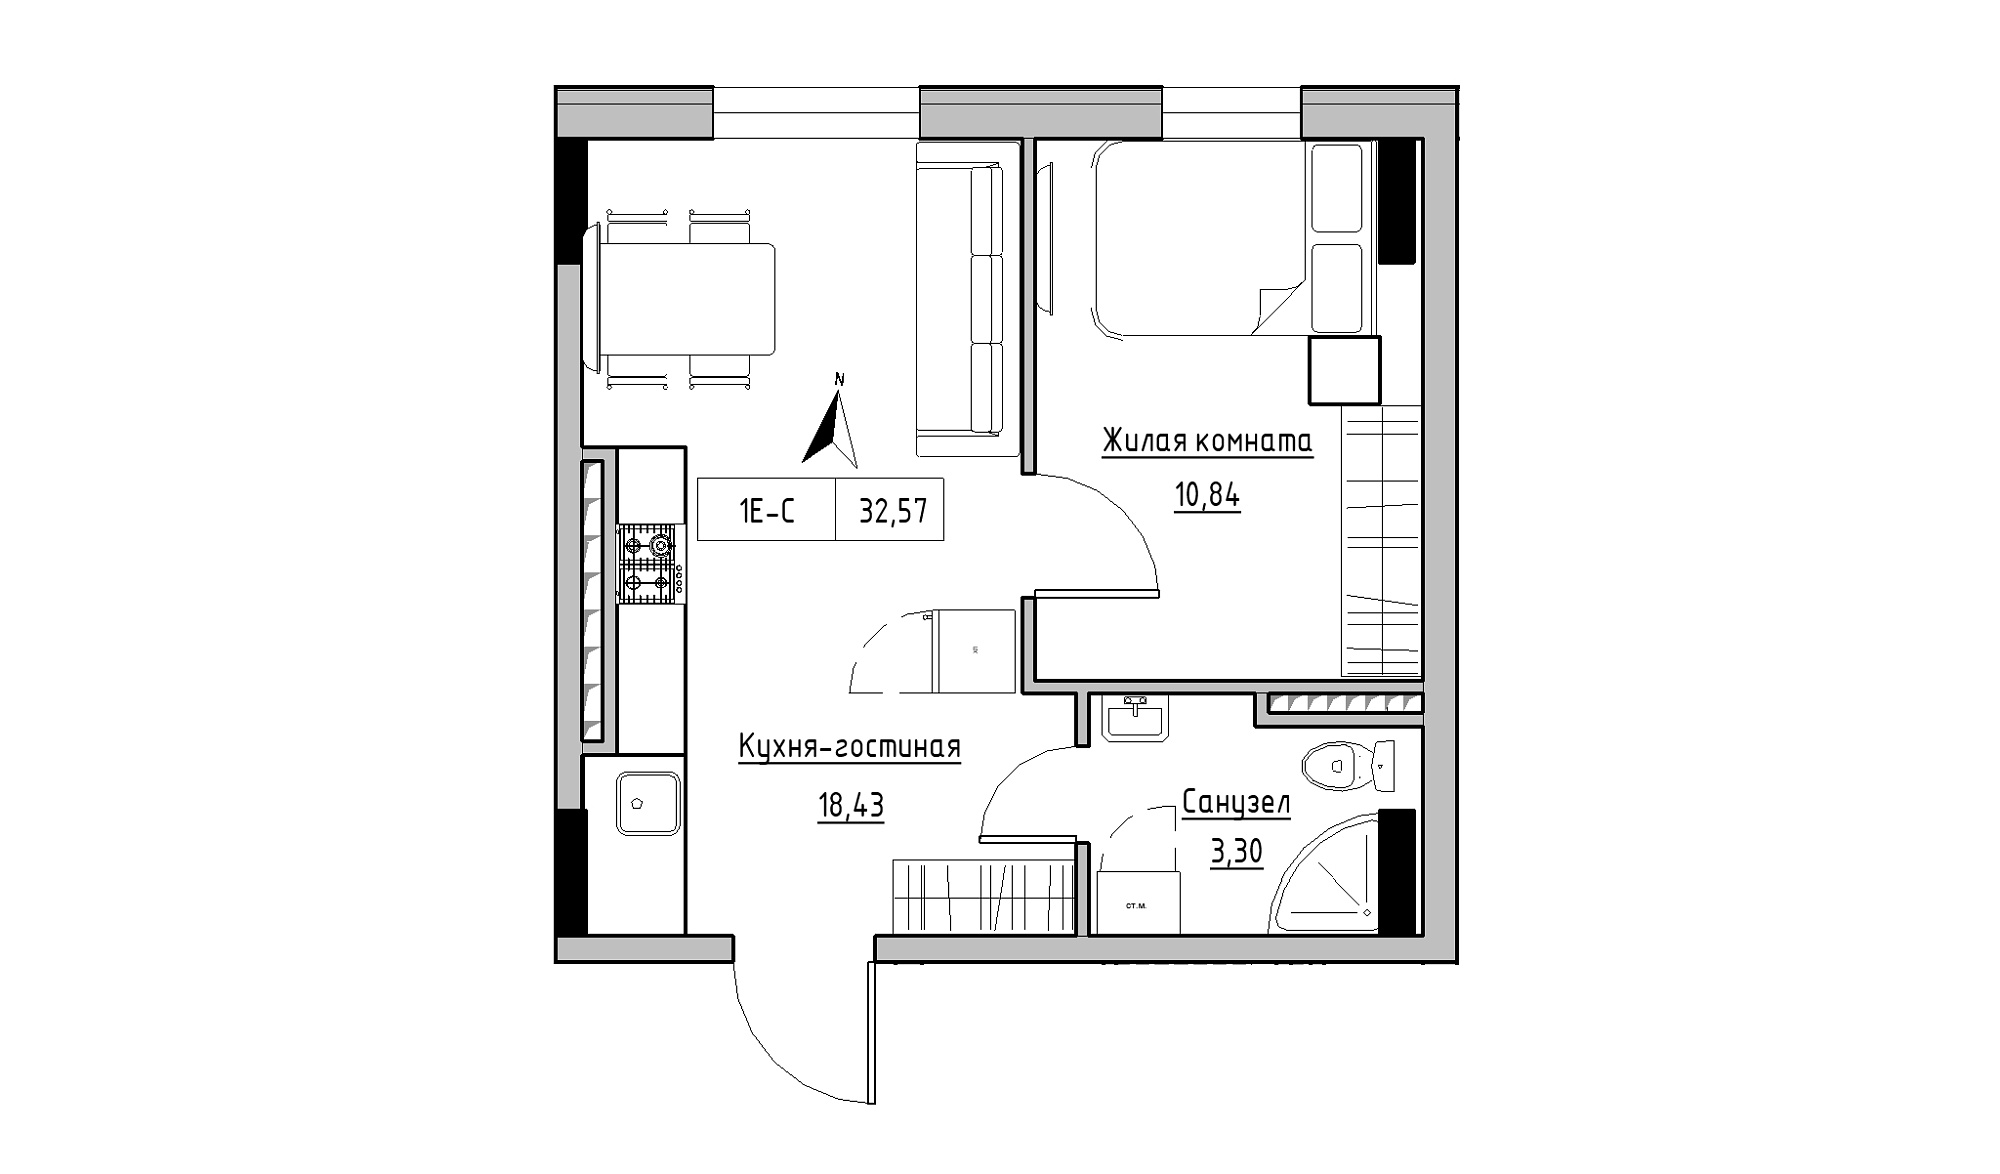 Планировка 1-к квартира площей 32.57м2, KS-025-06/0011.